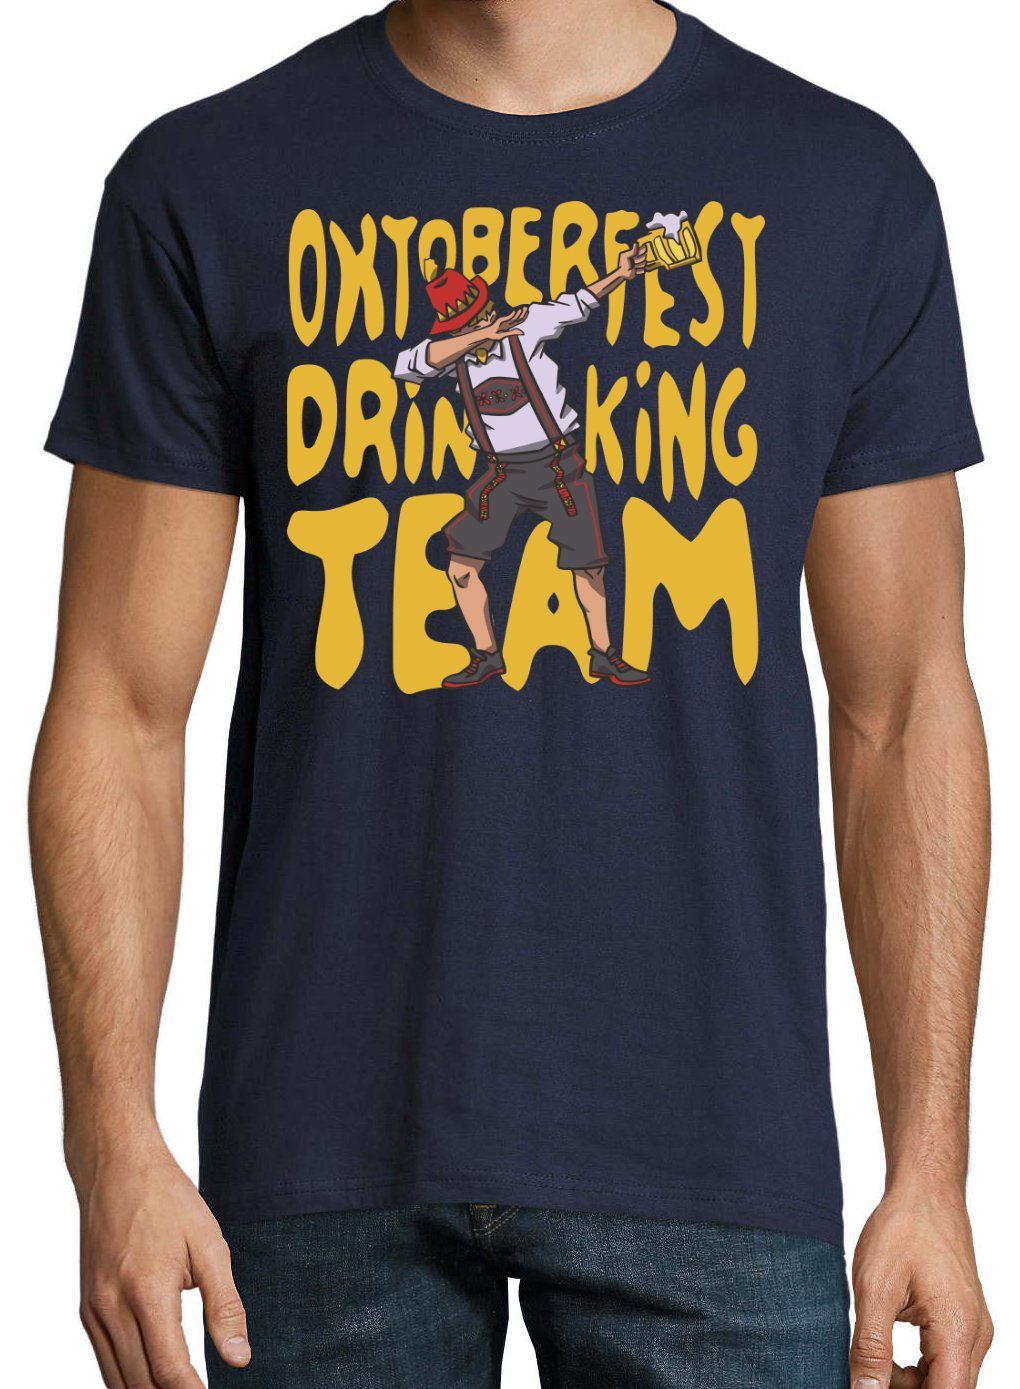 Herren lustigem T-Shirt Designz Print-Shirt Team Youth Drinking Print Trachten Spruch und mit Oktoberfest Navyblau